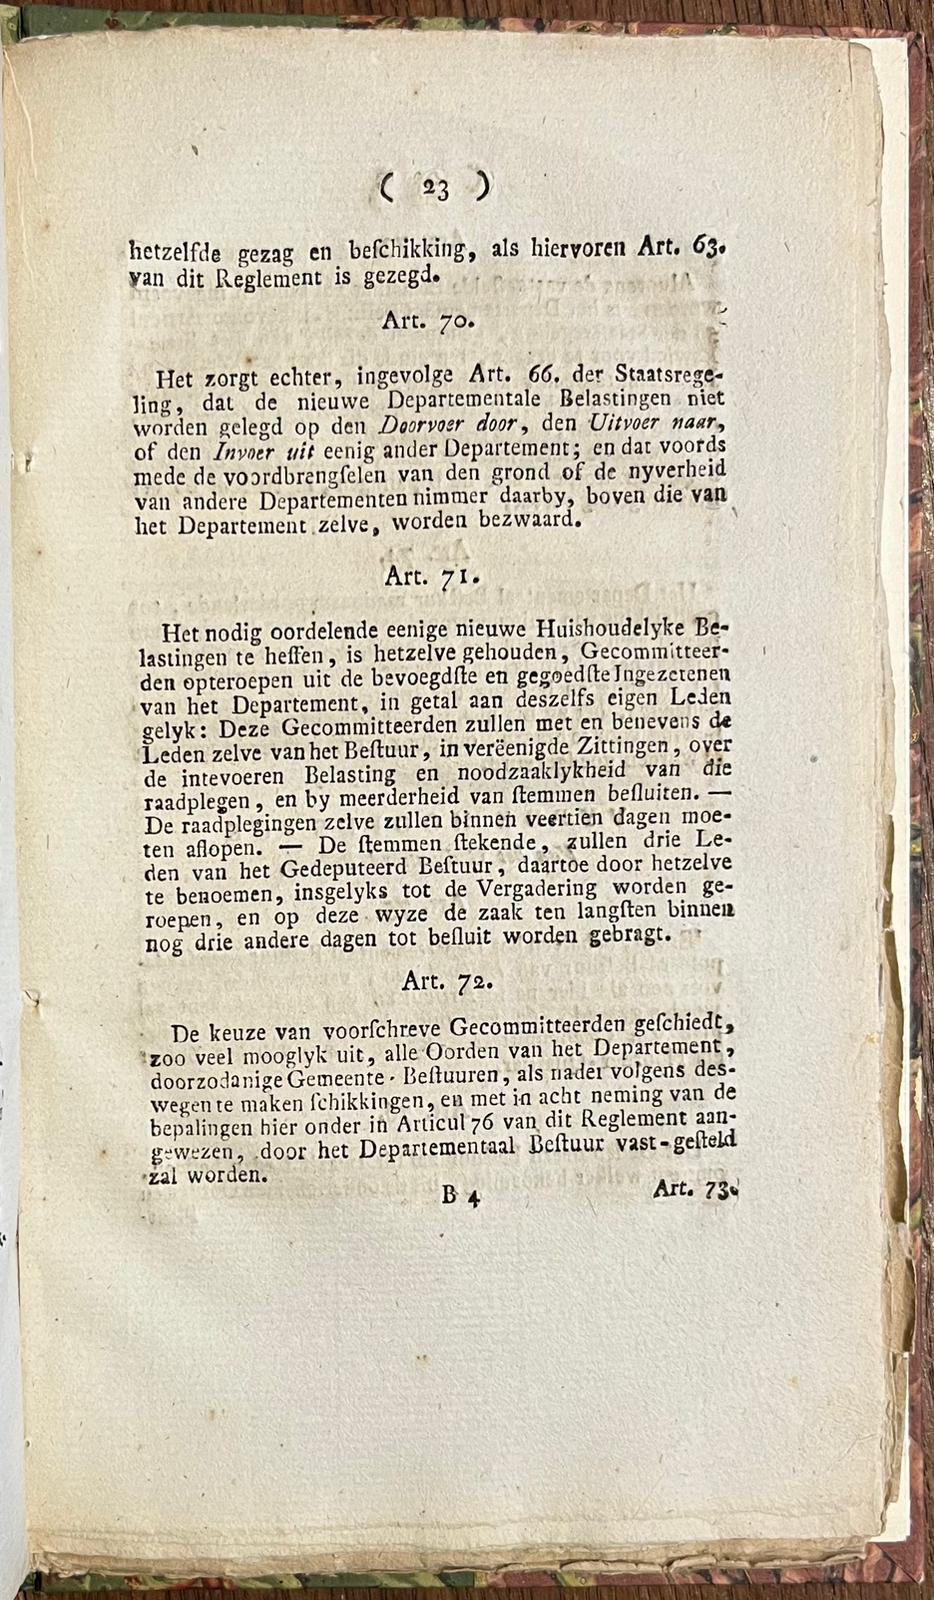 [Printed publication, [s.d.], Batavian Republic] Reglement voor het Departement Holland, [s.l.], [s.d.], 61 pp.